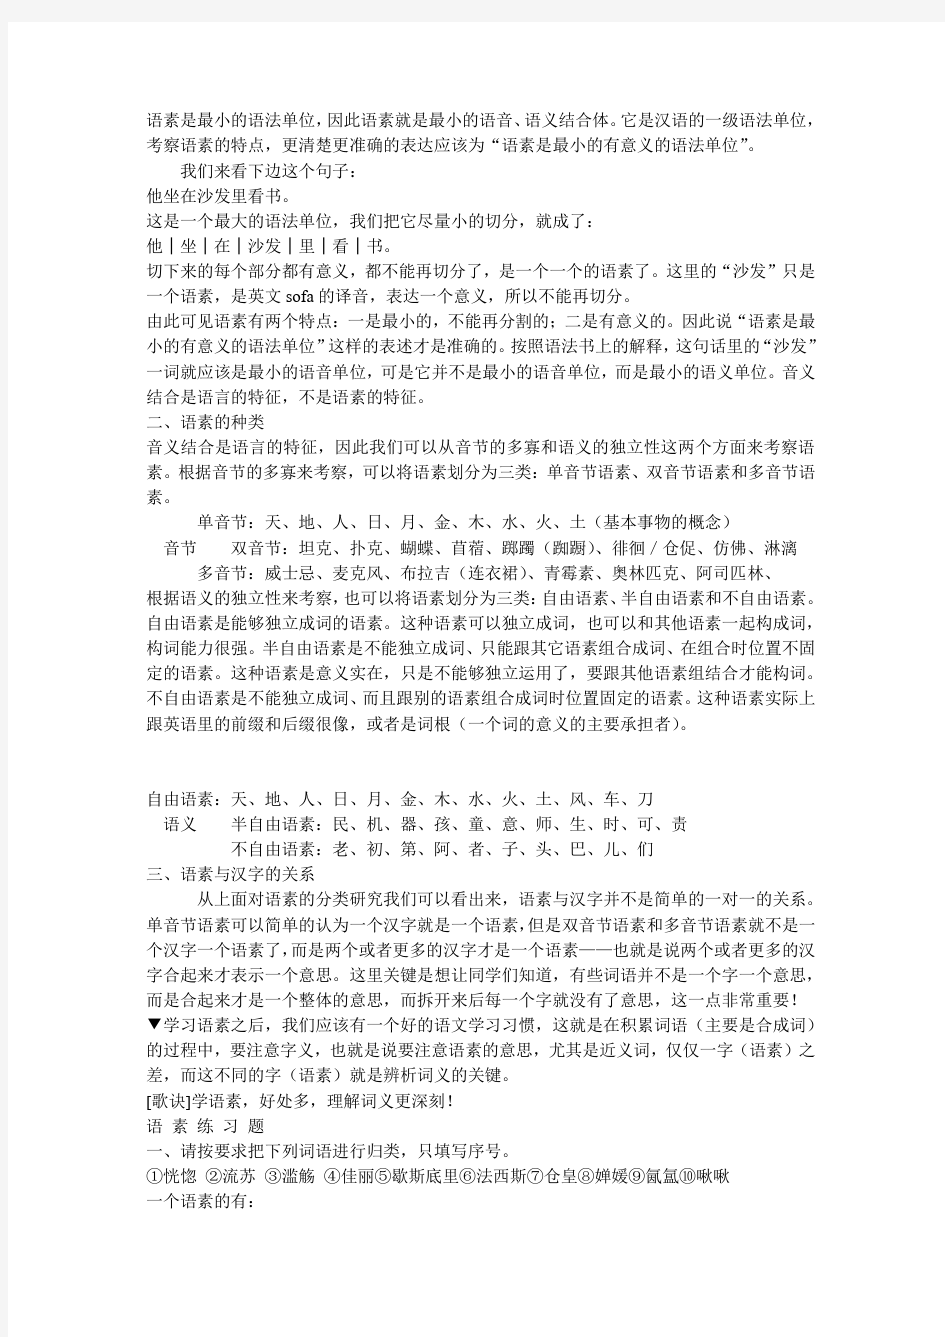 (完整版)现代汉语语法知识讲义(高三年级复习用)